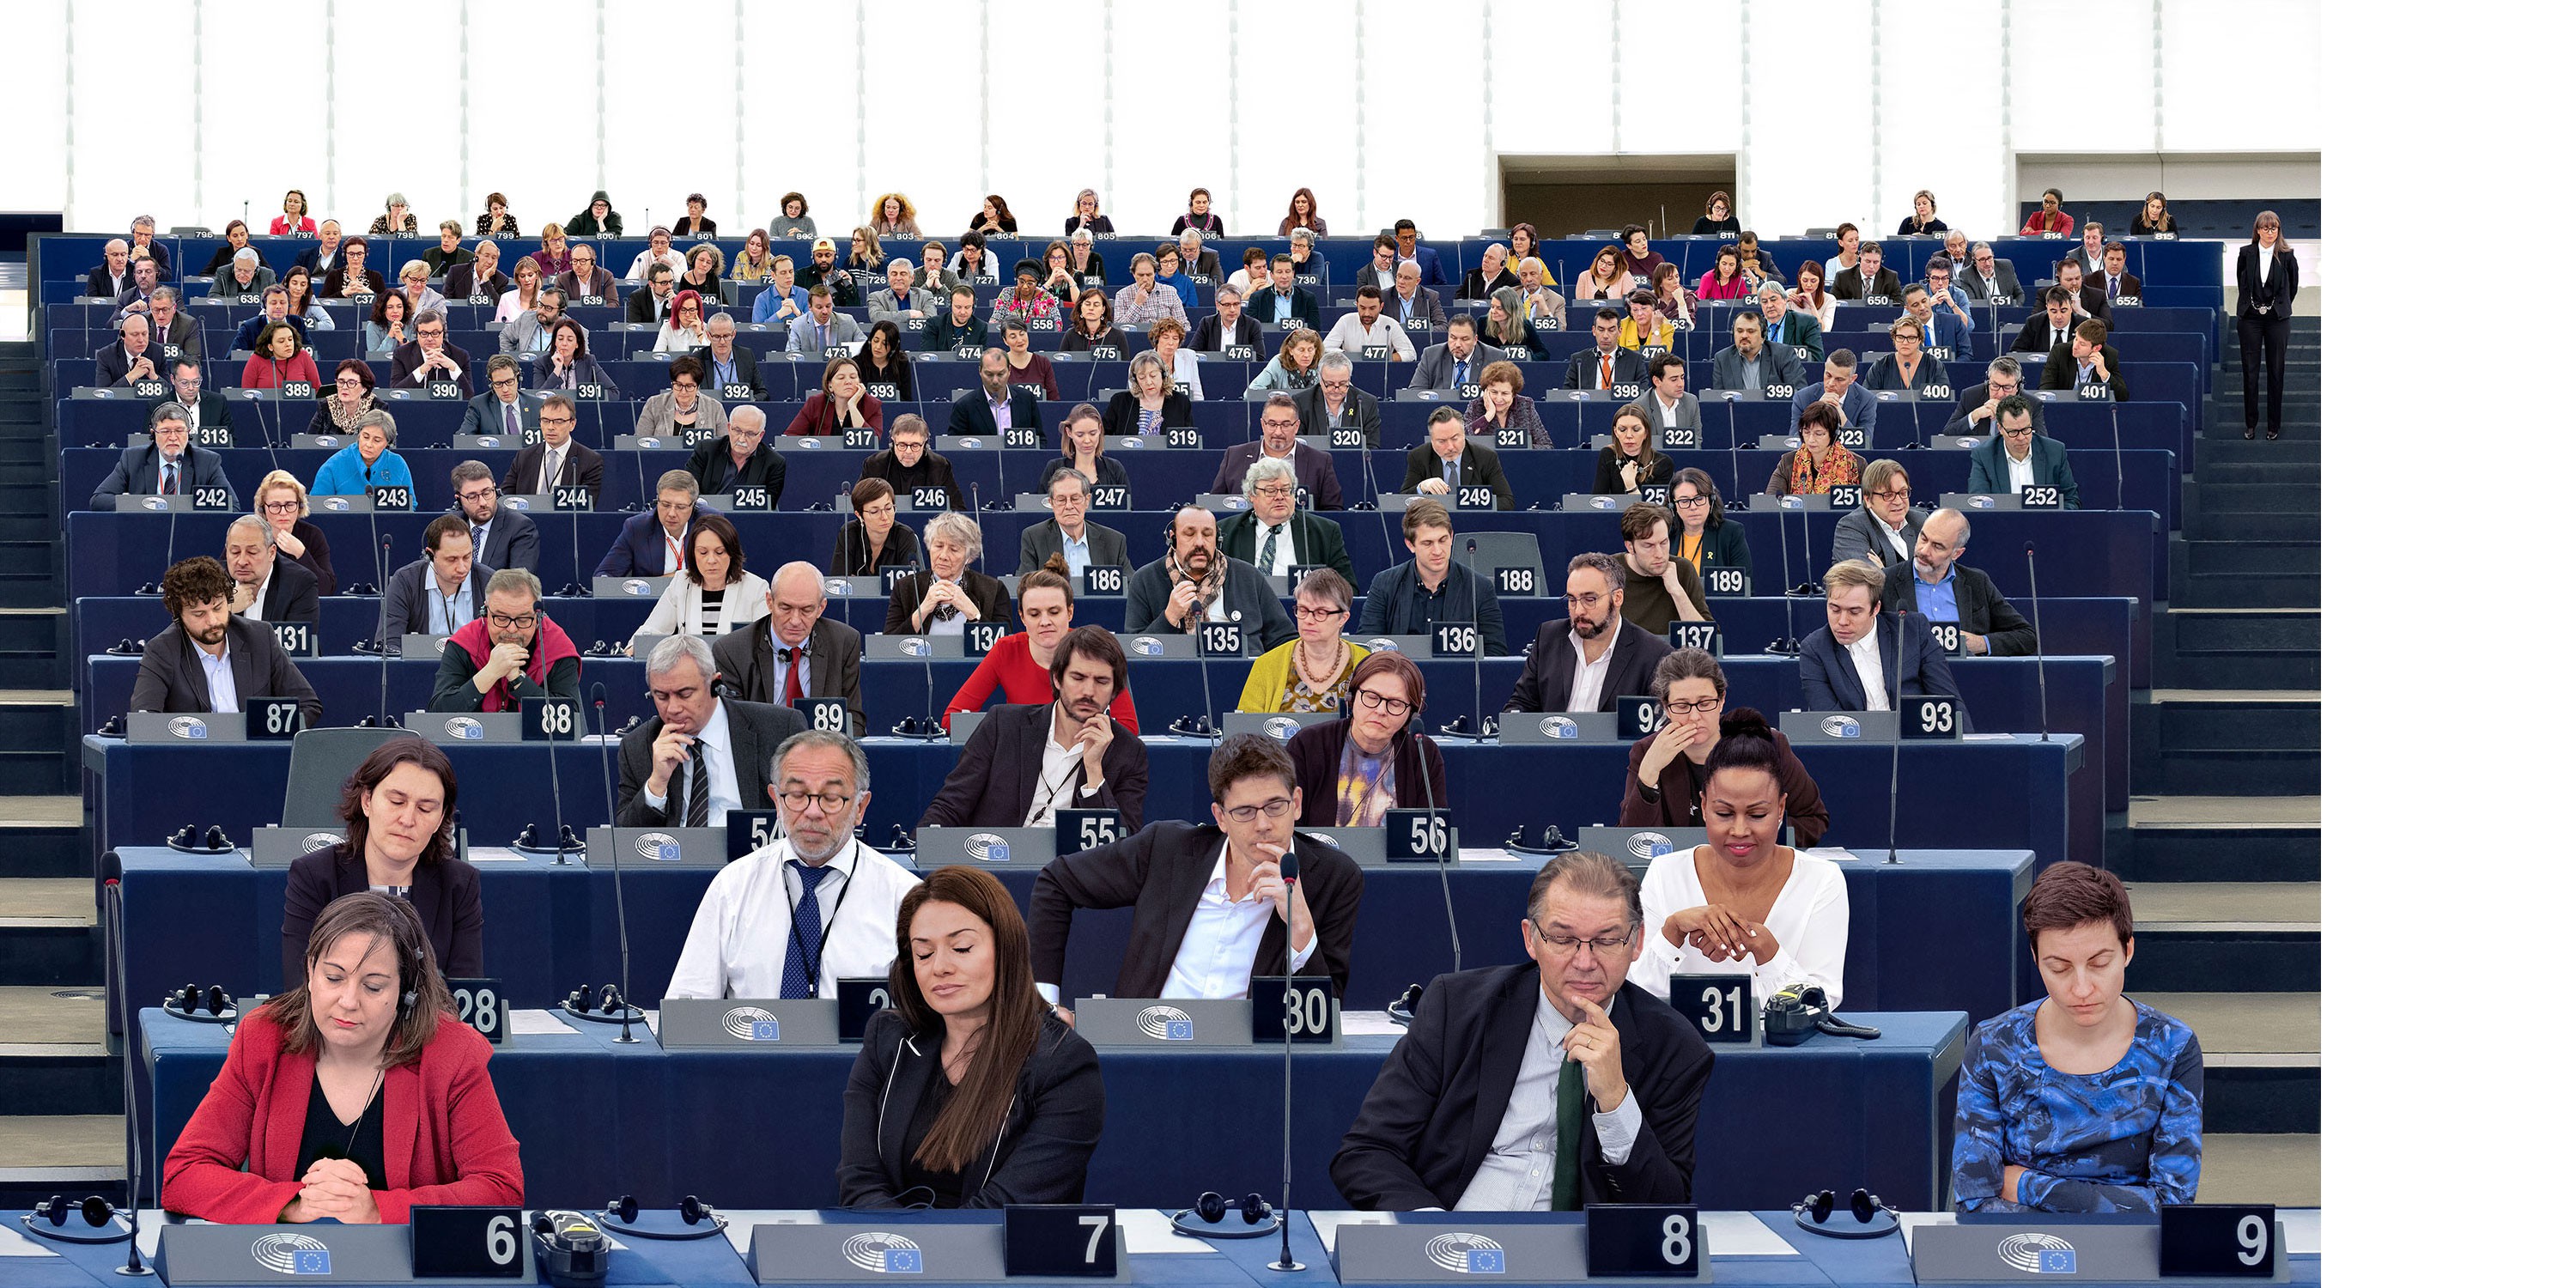 Das Parlament träumt - Ein poetisches Bild des Europäischen Parlaments